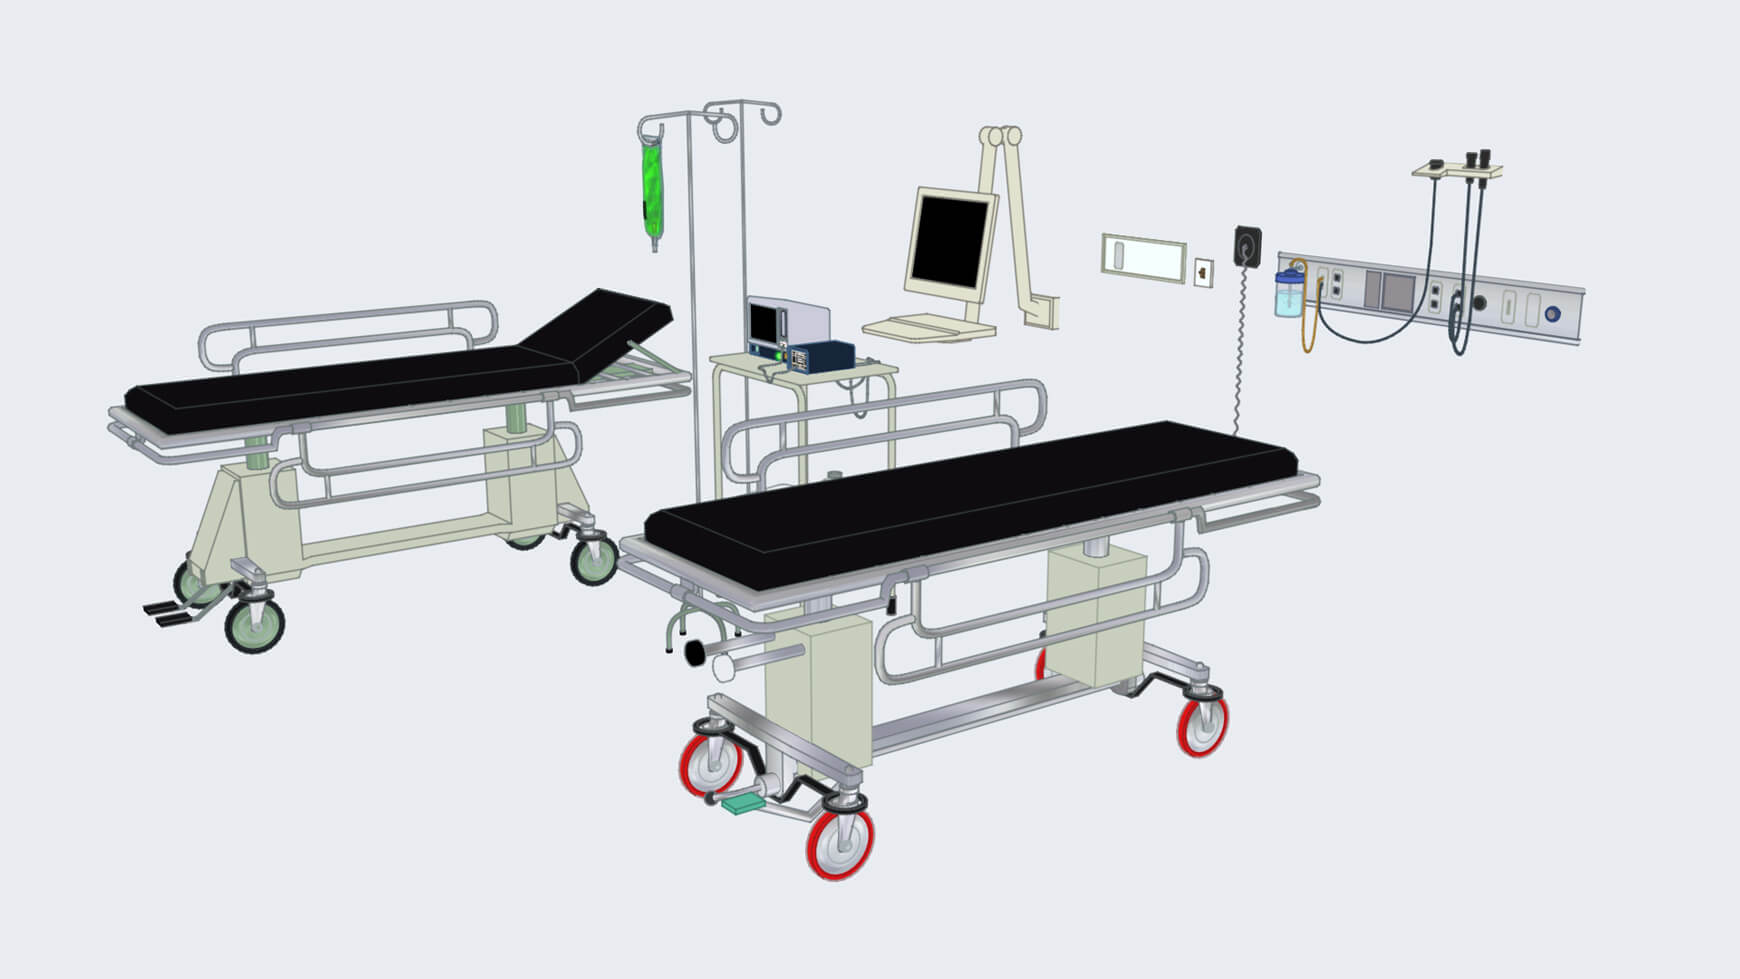 Free Cinema 4D 3D Model Medical Hospital Room Assets